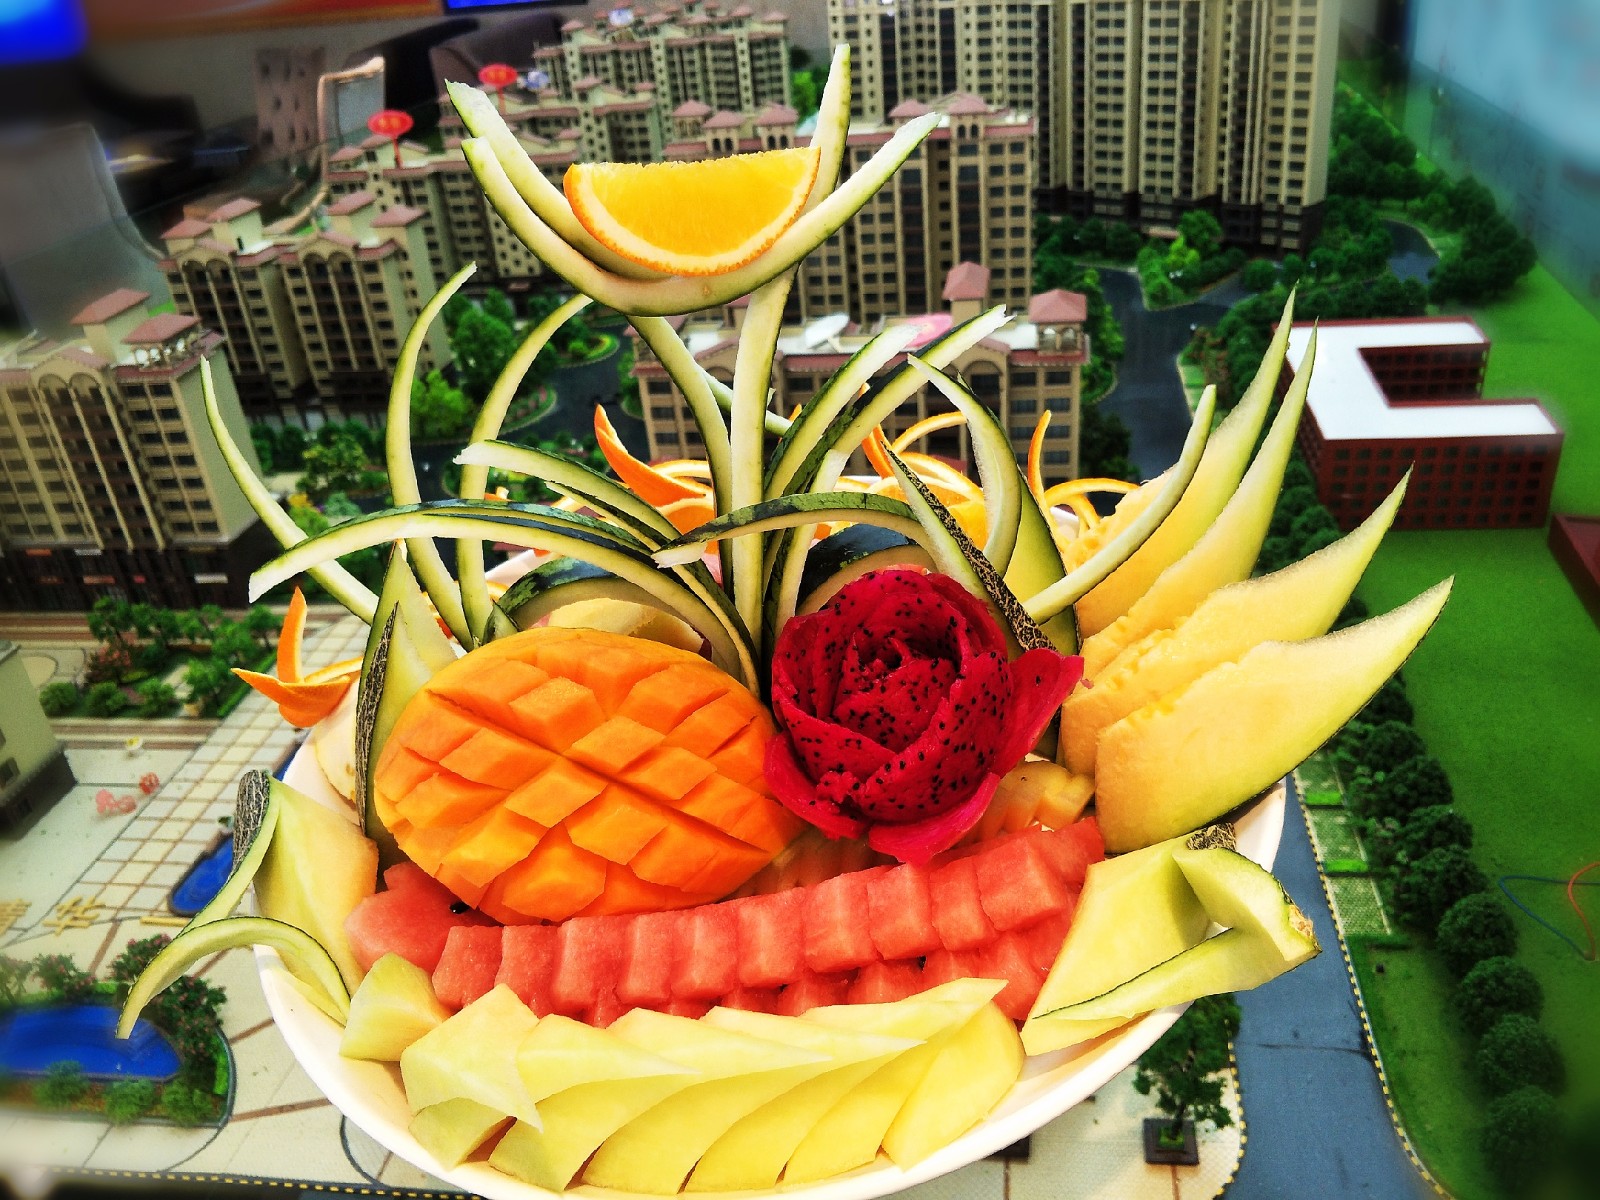 日本雕刻师用水果蔬菜雕刻的作品